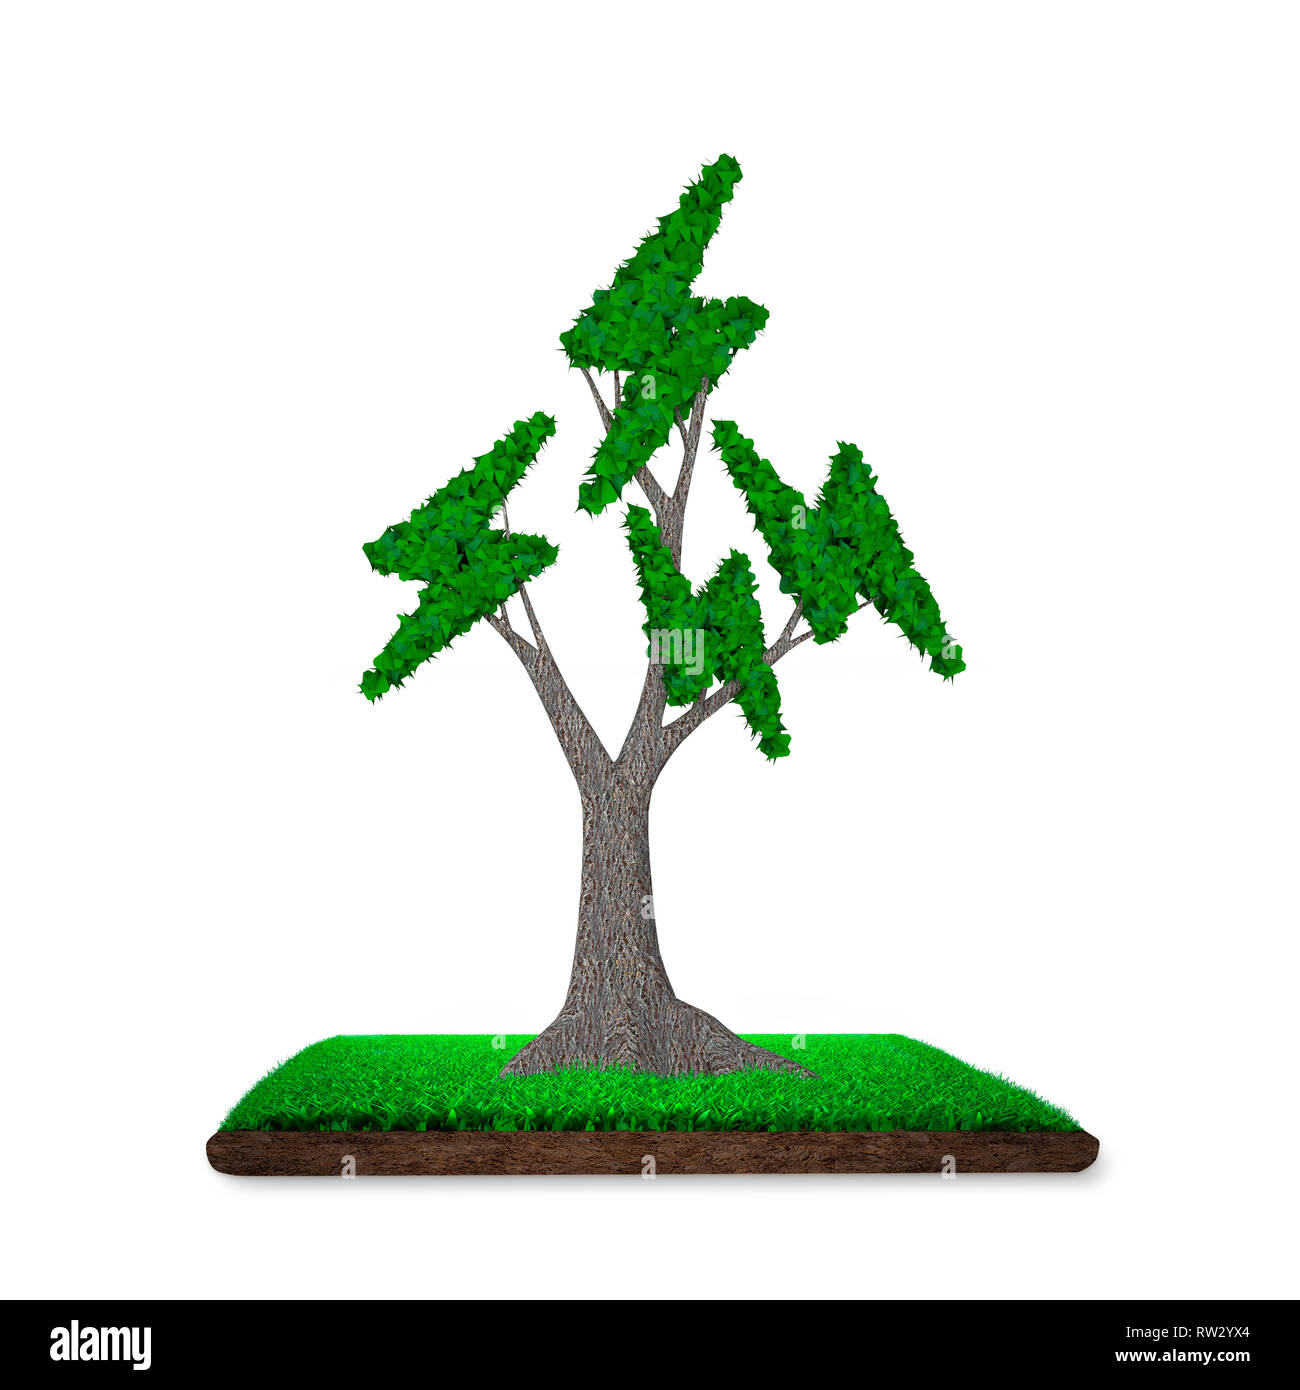 Konzept für die Lieferung oder die Entwicklung von Green Energy Generation, Baum mit grünen Blättern in Blitz Form auf Wiese mit Schlamm, isoliert auf Weiss, 3D Stockfoto